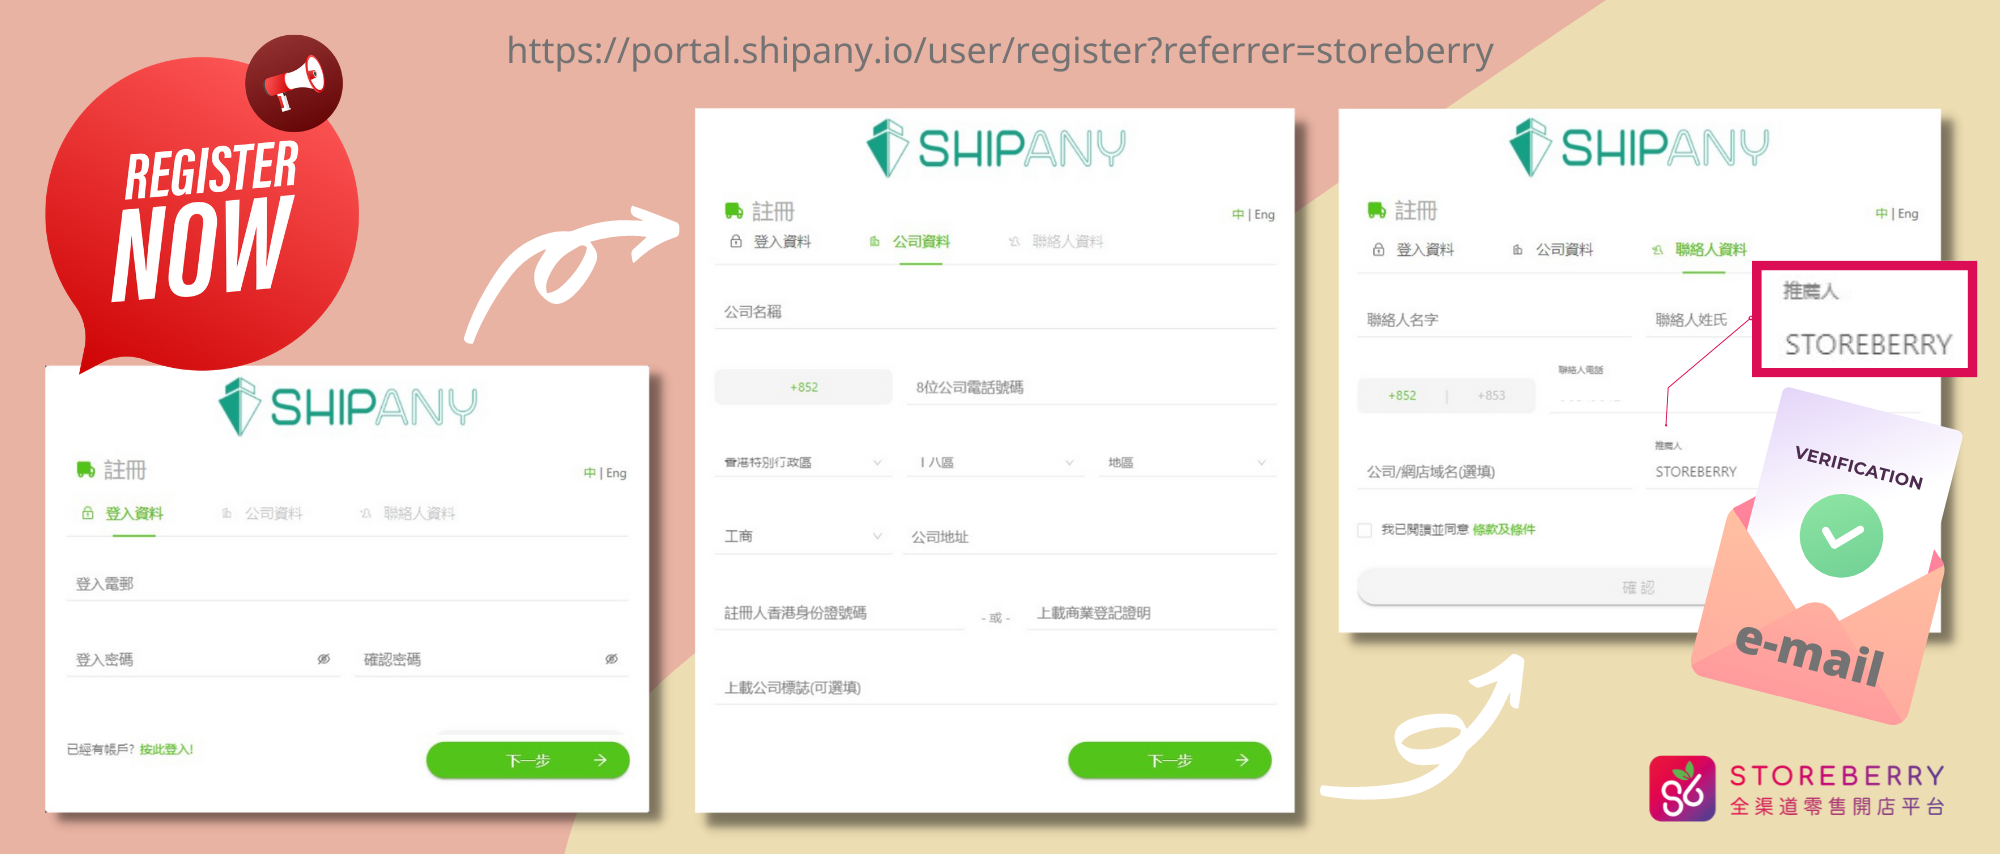  【STOREBERRY x ShipAny 智能物流平台】一鍵串連多個網店物流供應商，印單寄件全面自動化！  